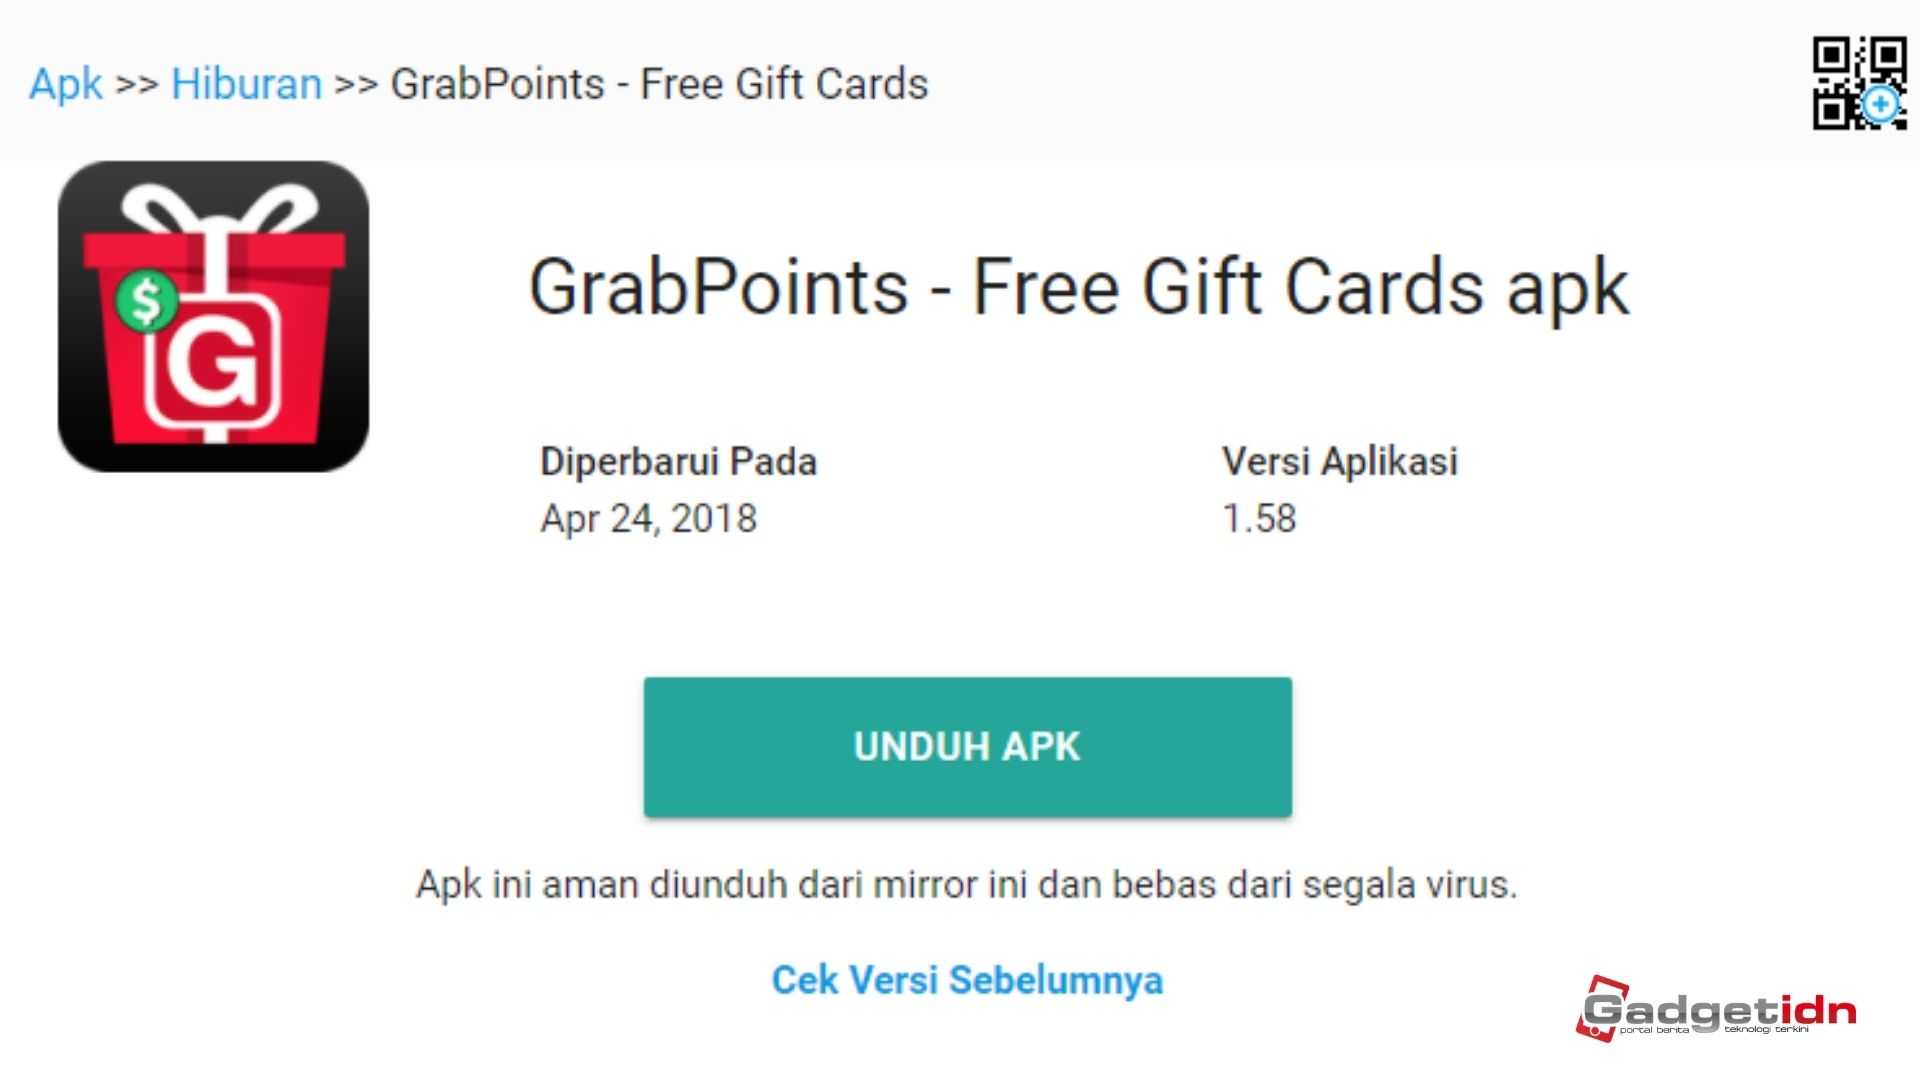 Grab Points aplikasi penghasil uang tanpa modal